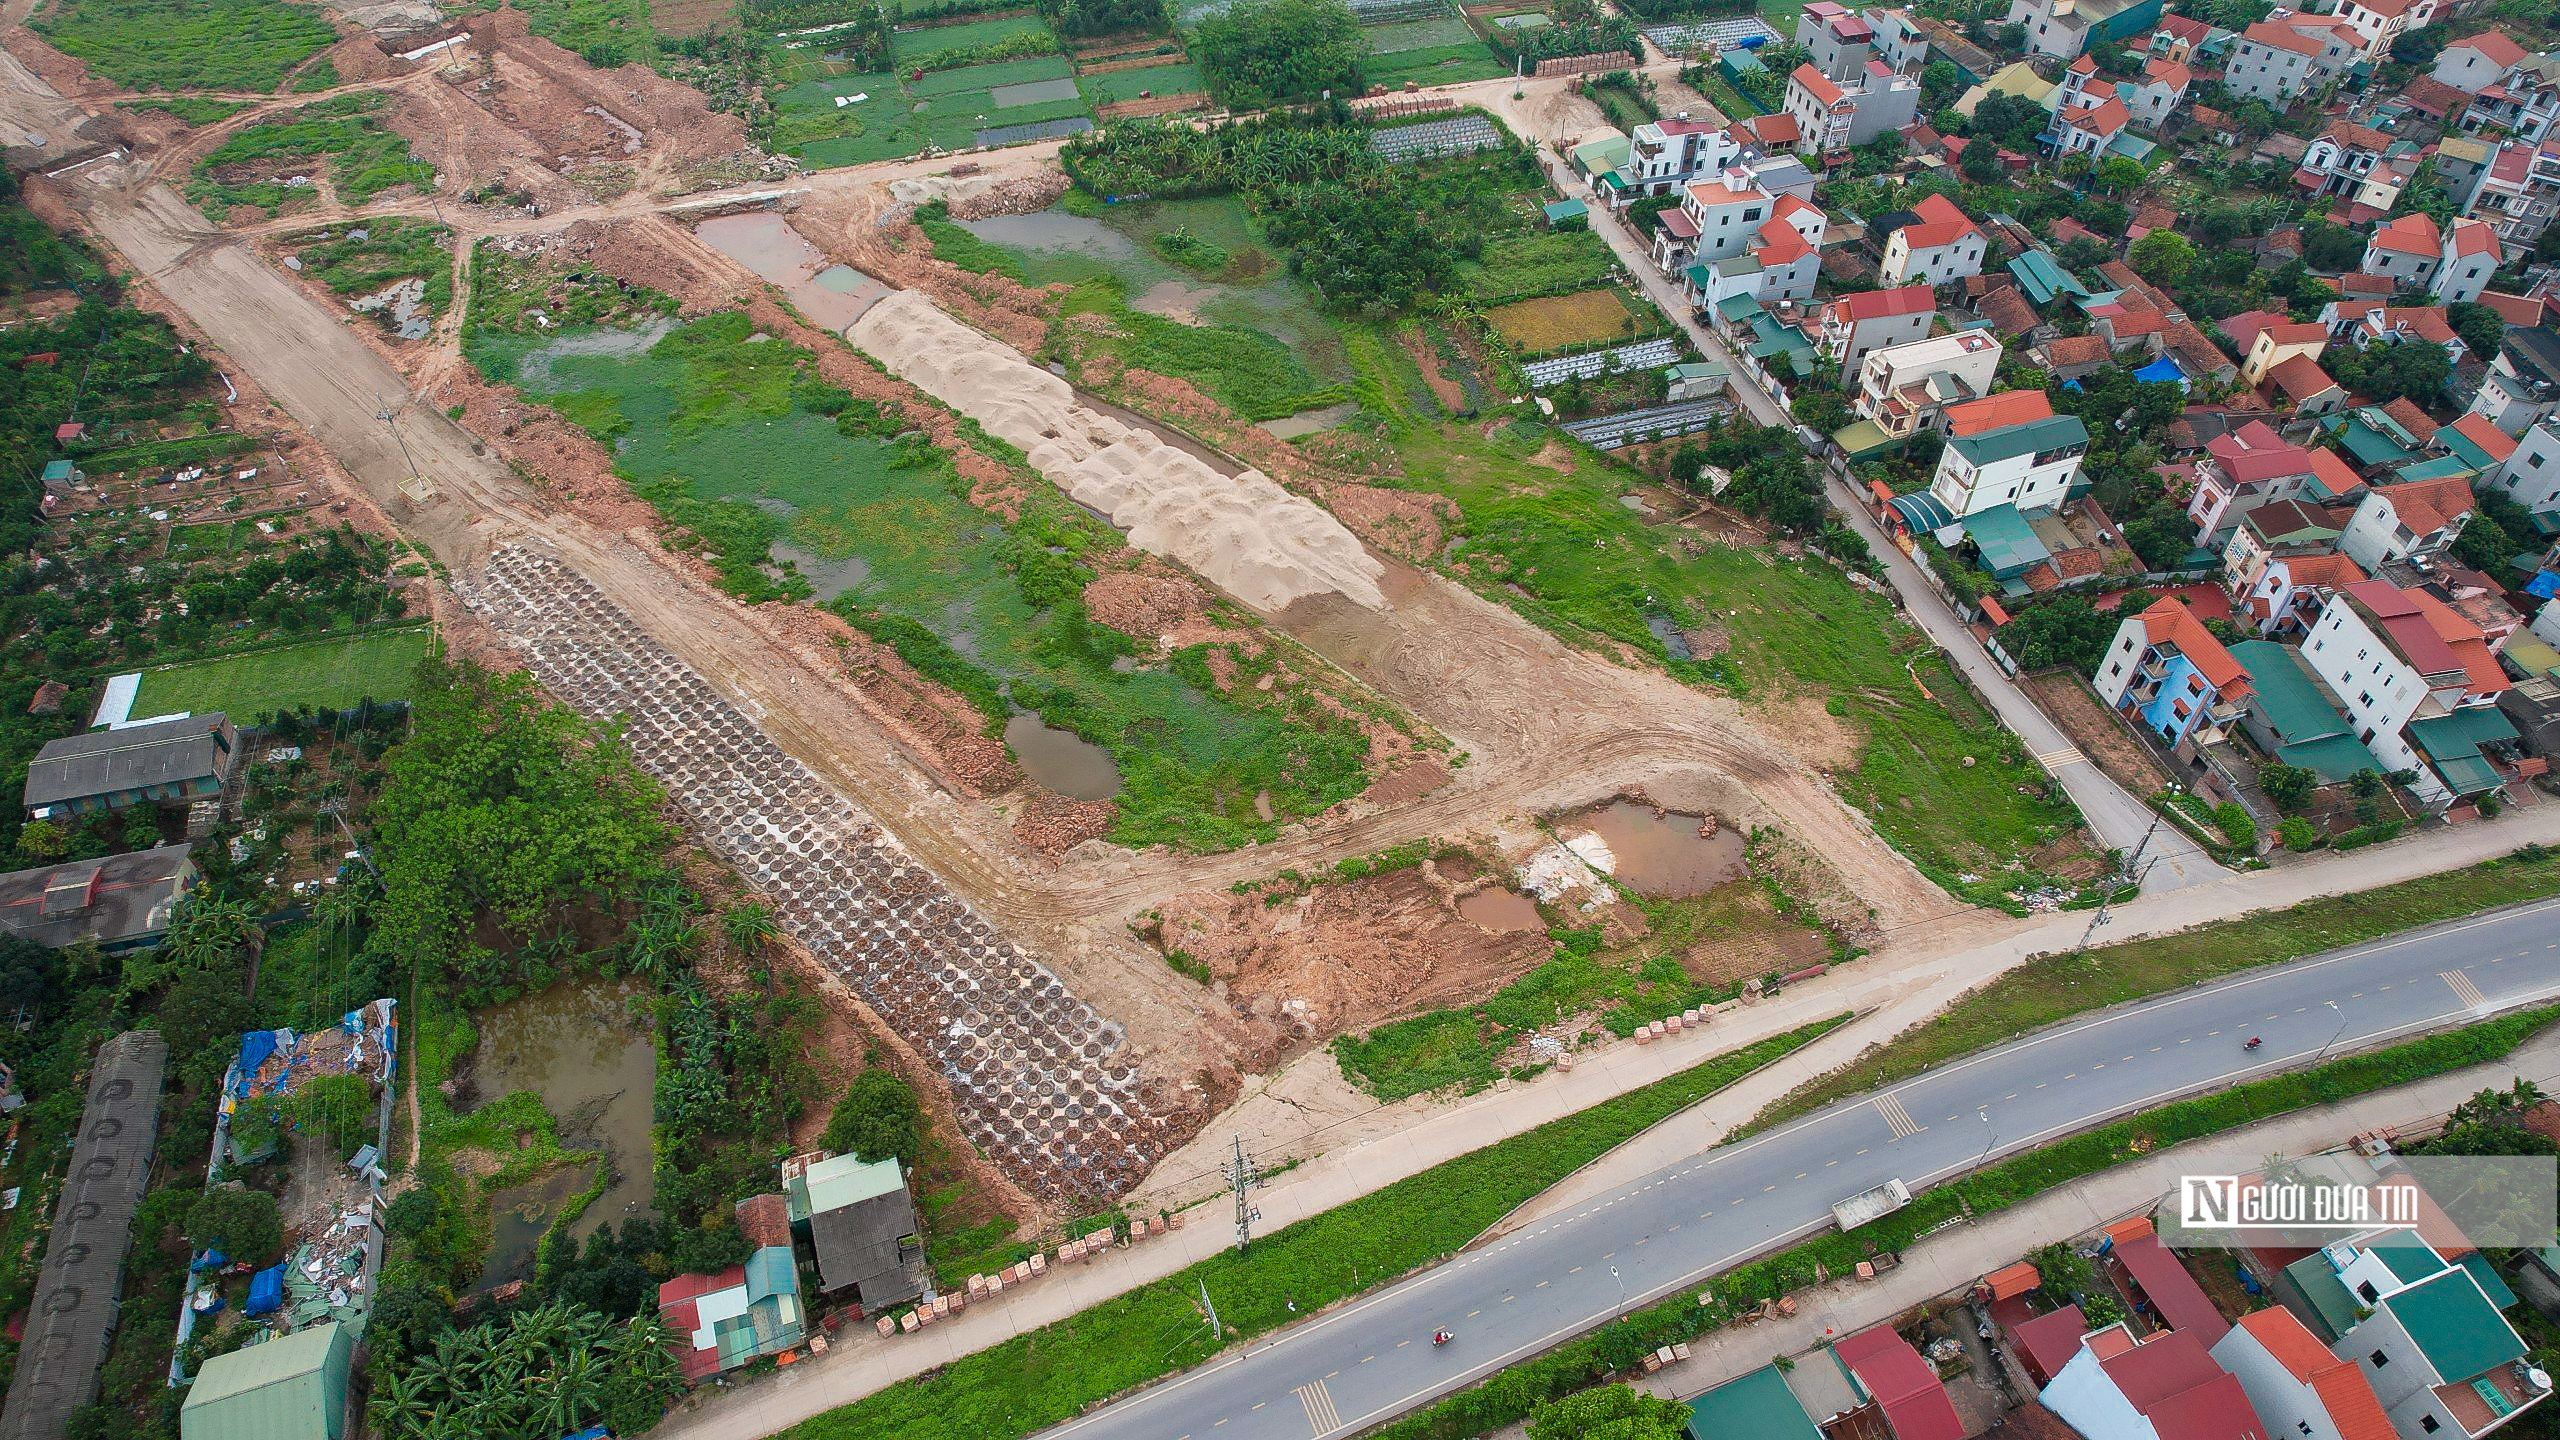 Bất động sản - Hà Nội: Khu vực xây cầu Hồng Hà trị giá gần 10.000 tỷ đồng (Hình 5).